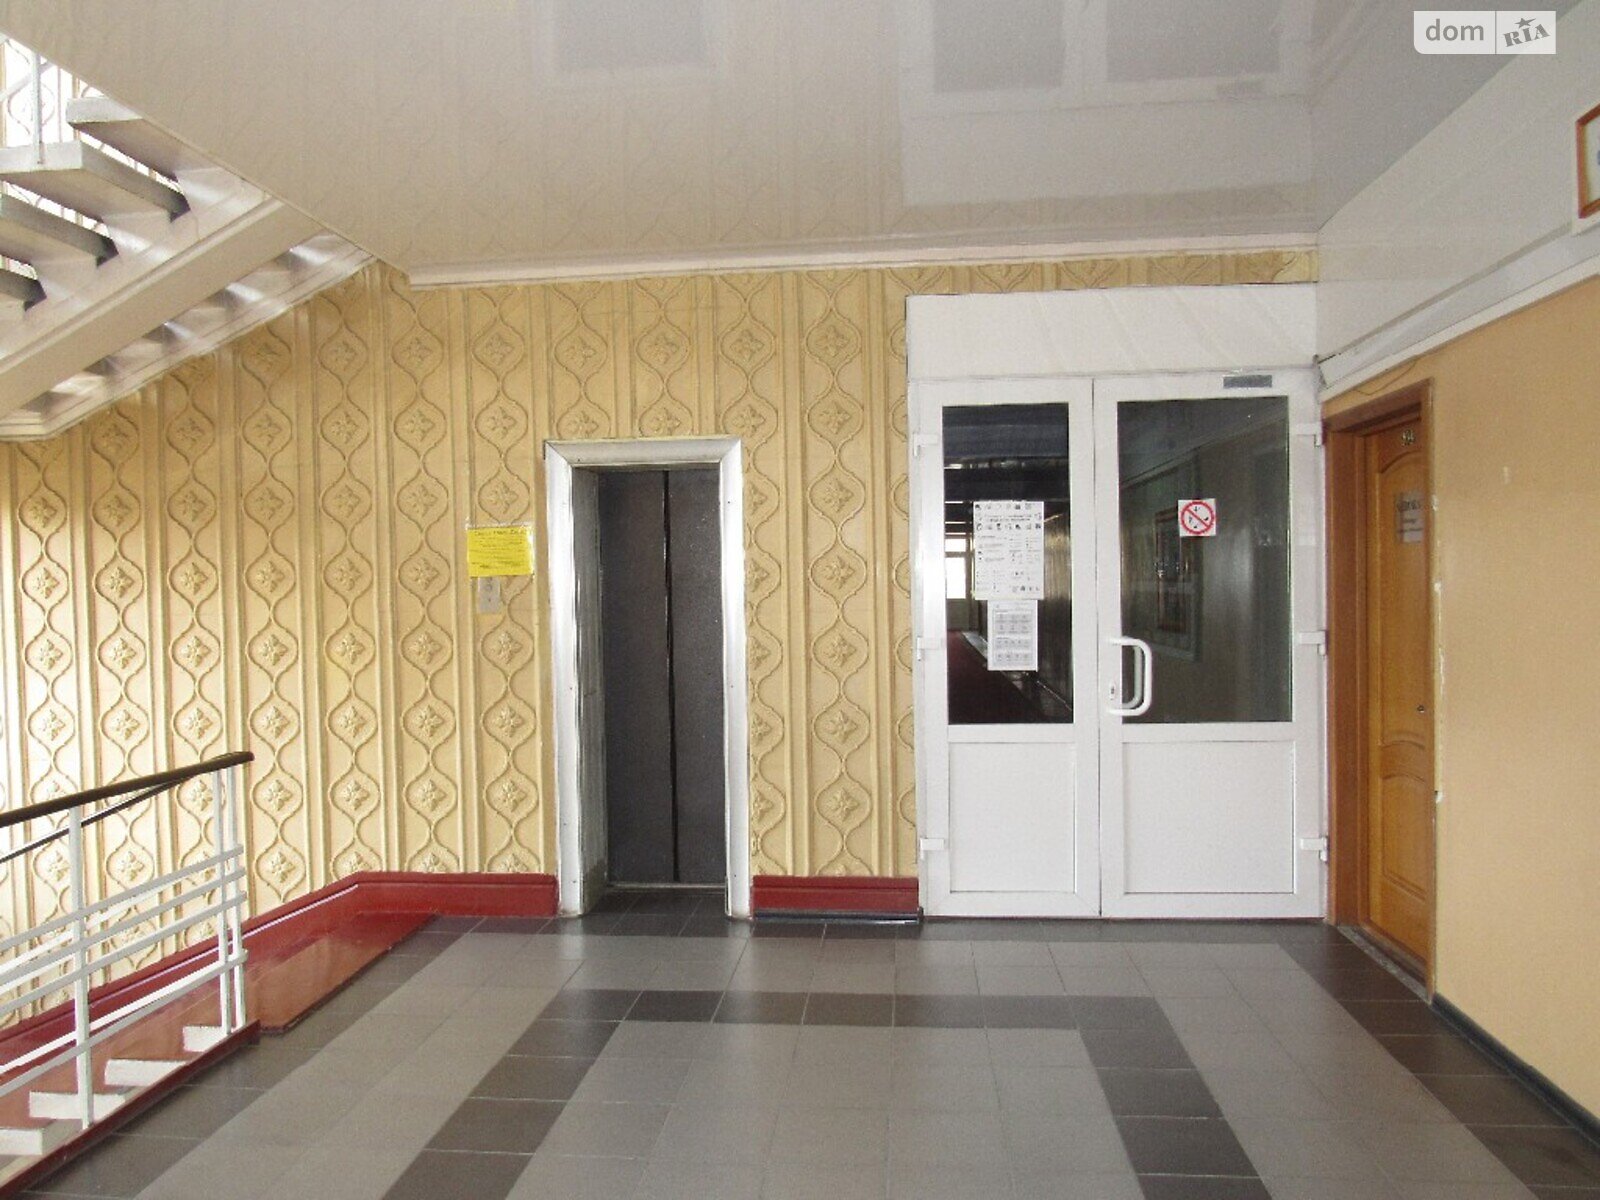 Аренда офисного помещения в Виннице, Хмельницкое шоссе, помещений - 1, этаж - 4 фото 1